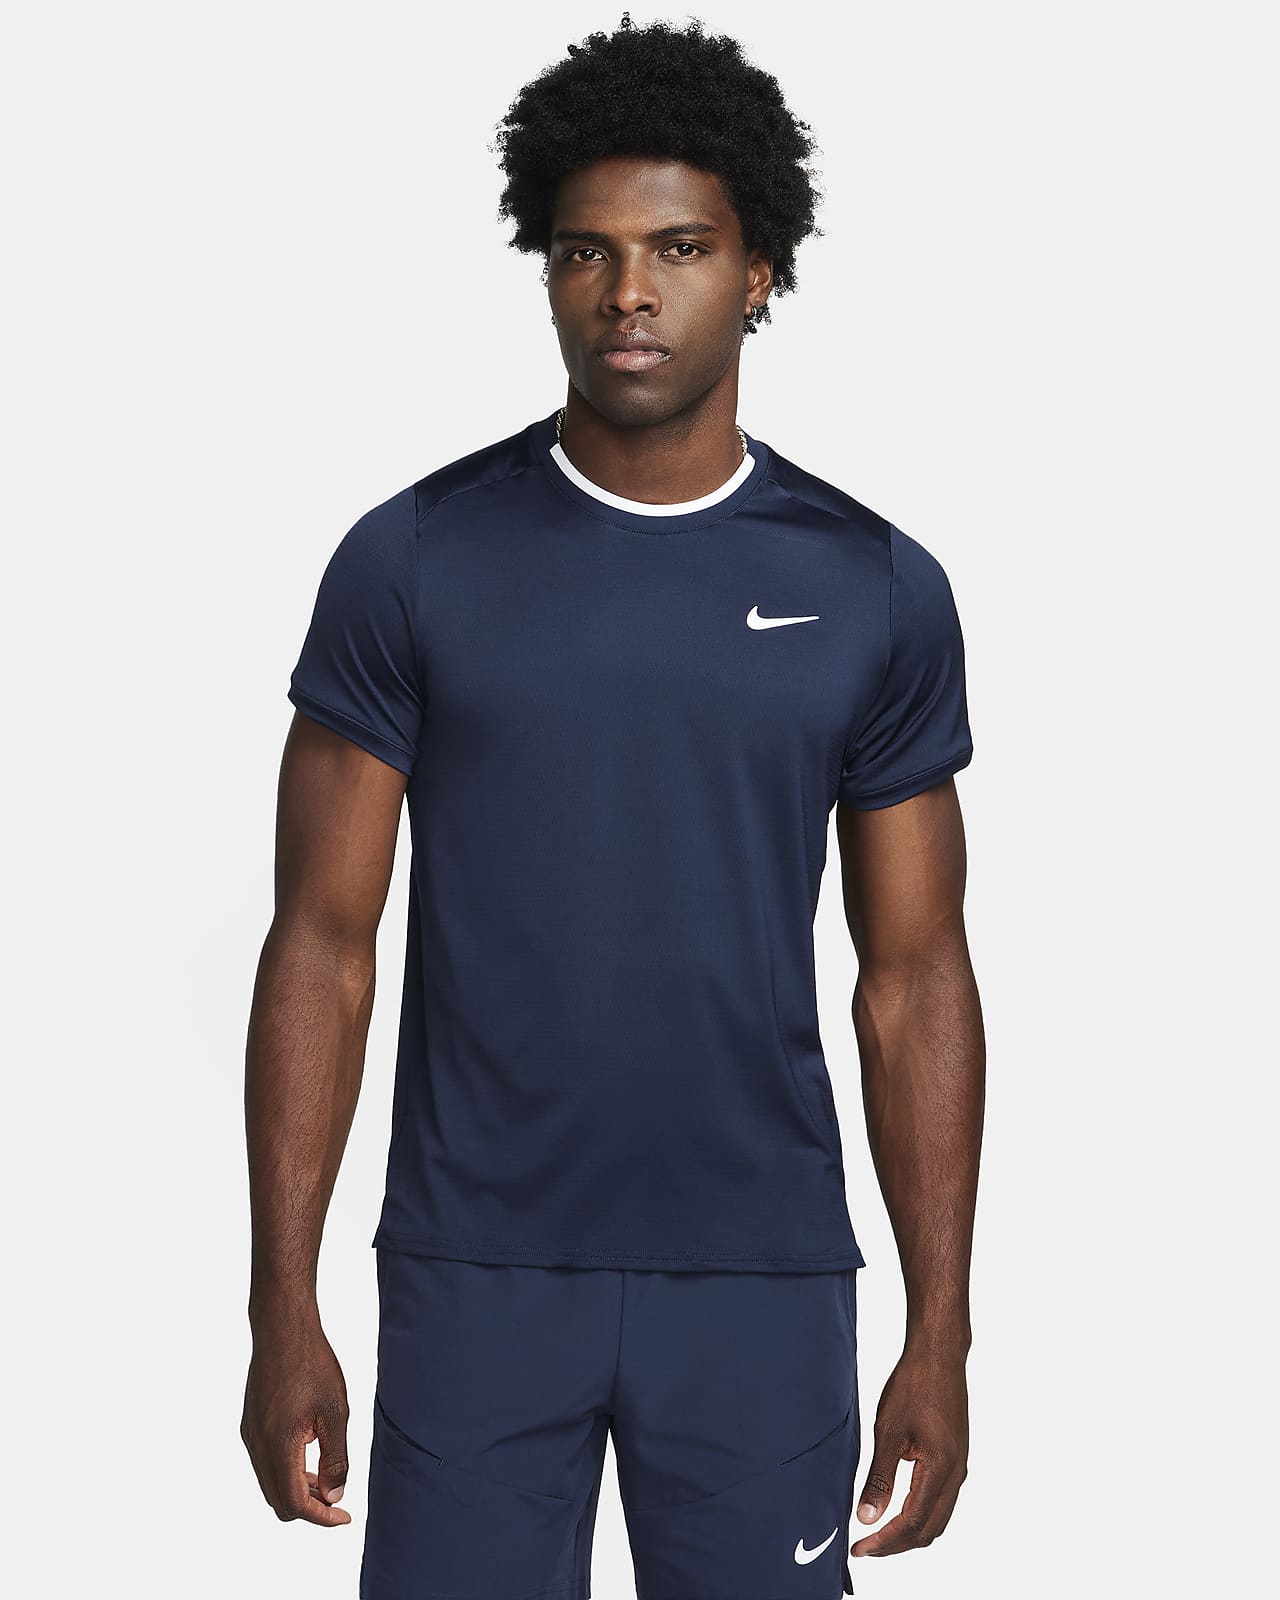 Ανδρική μπλούζα τένις Dri-FIT NikeCourt Advantage